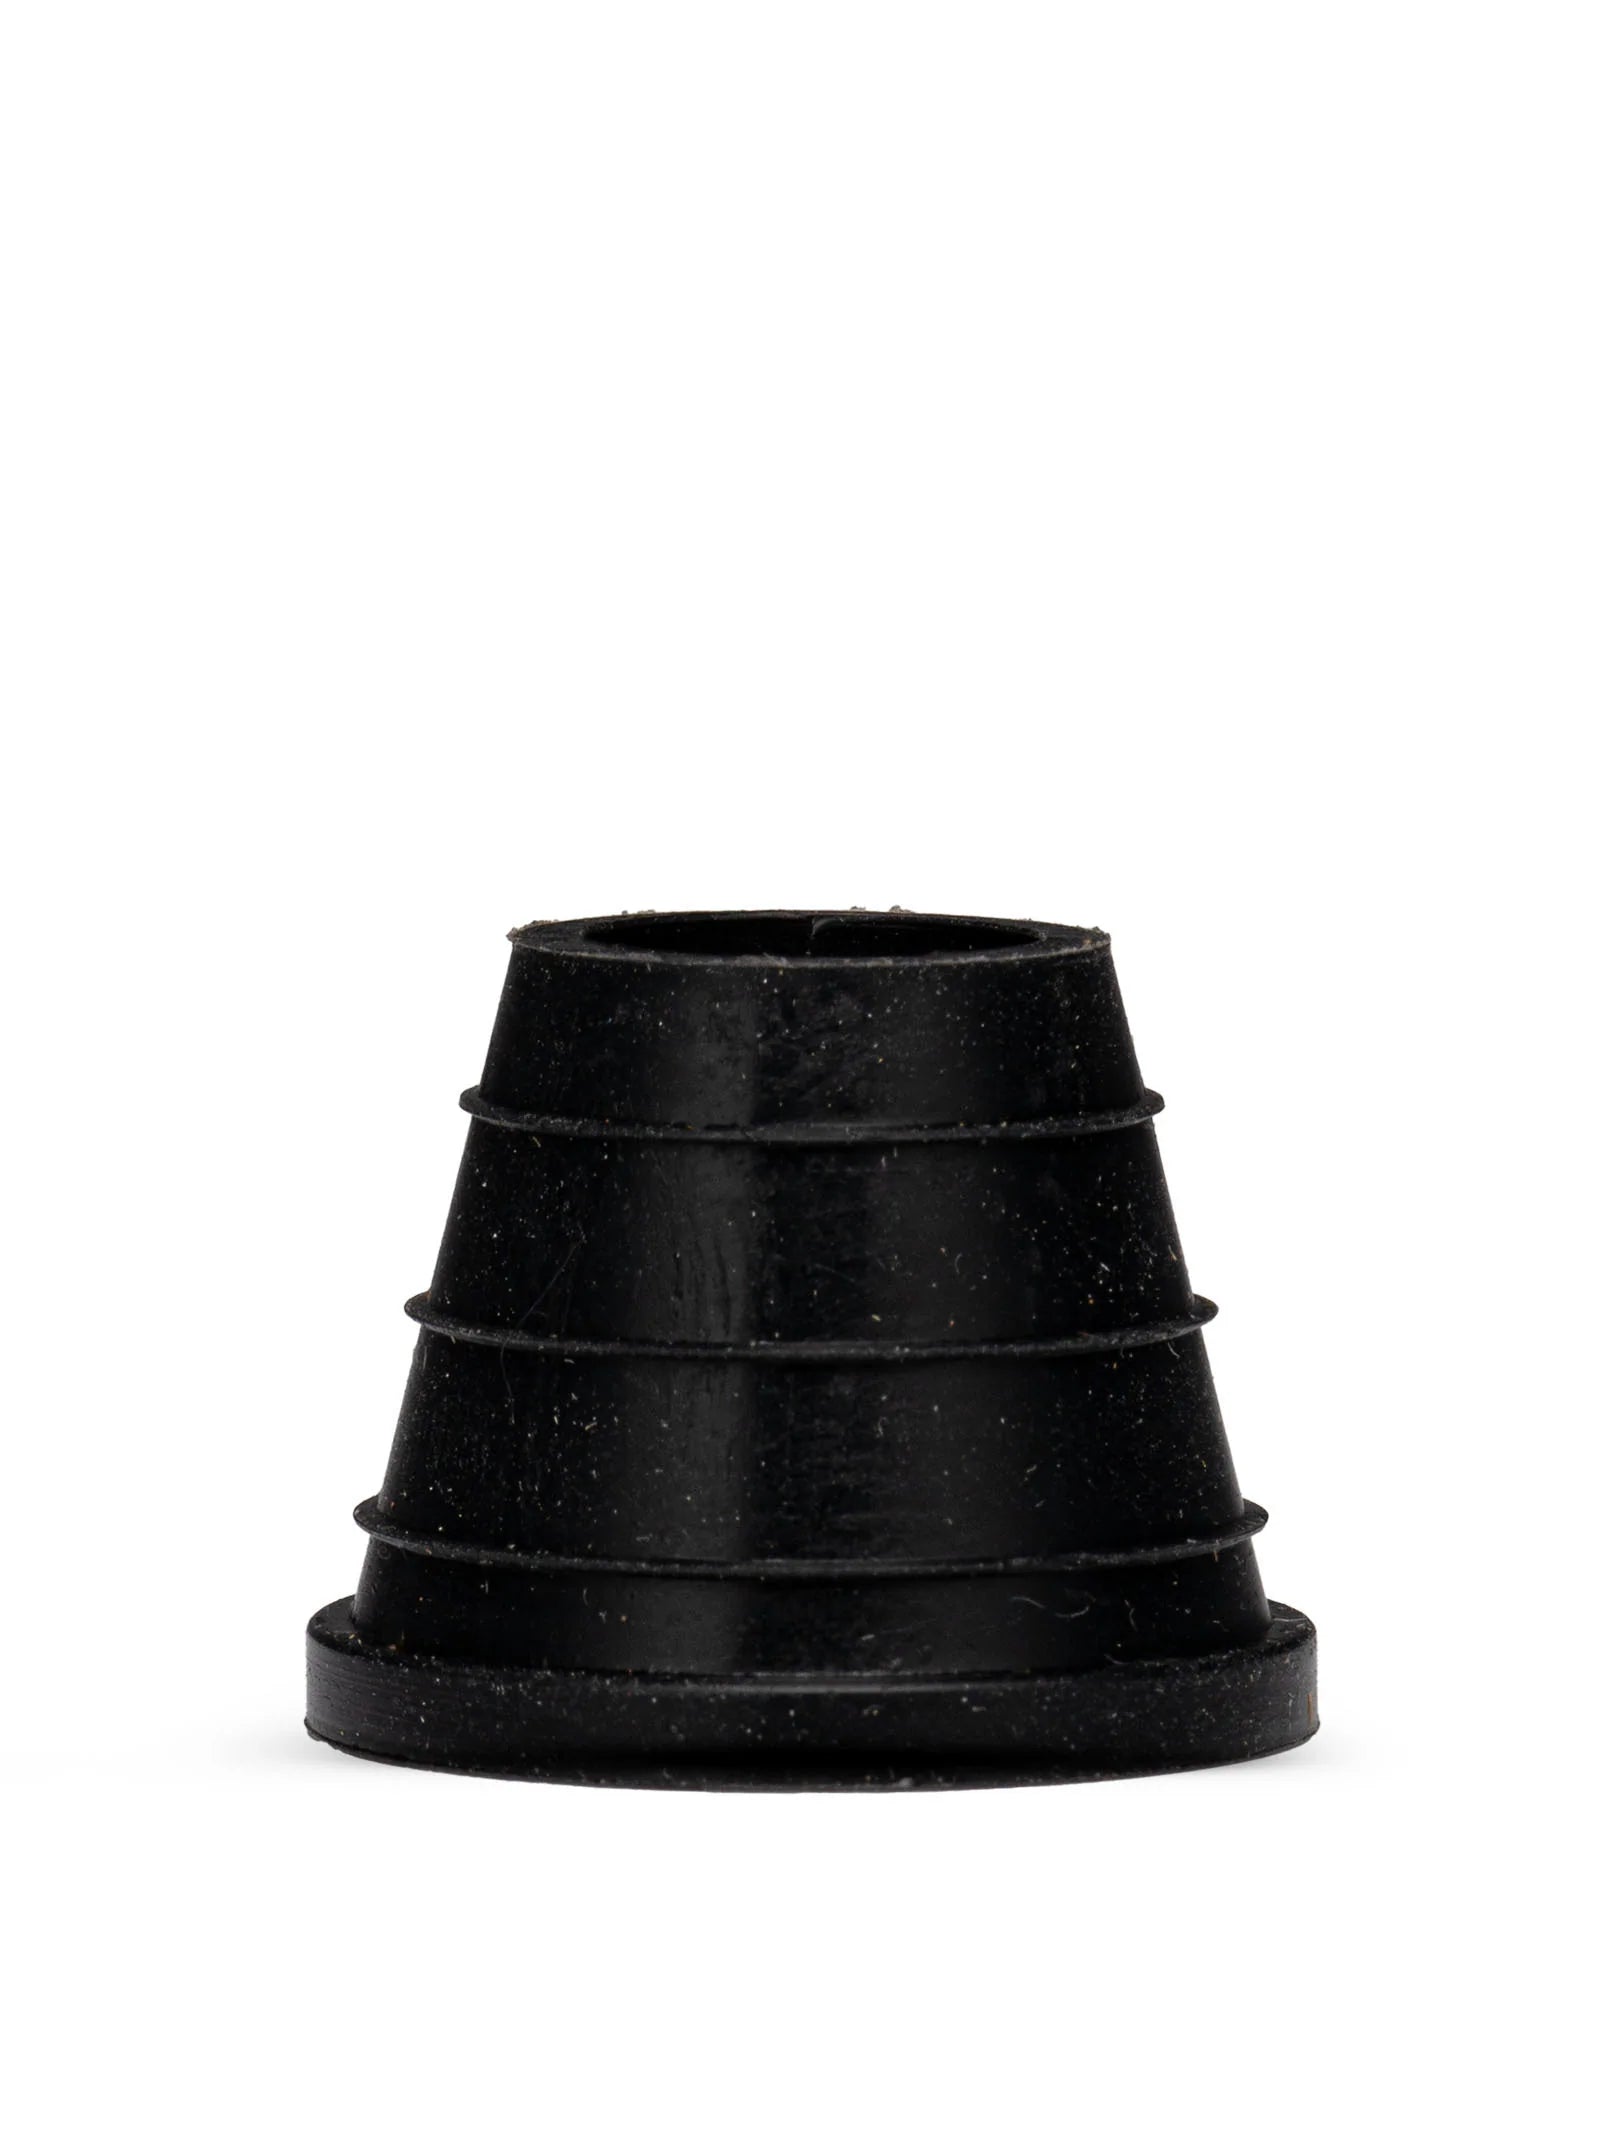 Thick Rubber Shisha Hookah Bowl Grommet 3Pk - Black - The Shisha Shop